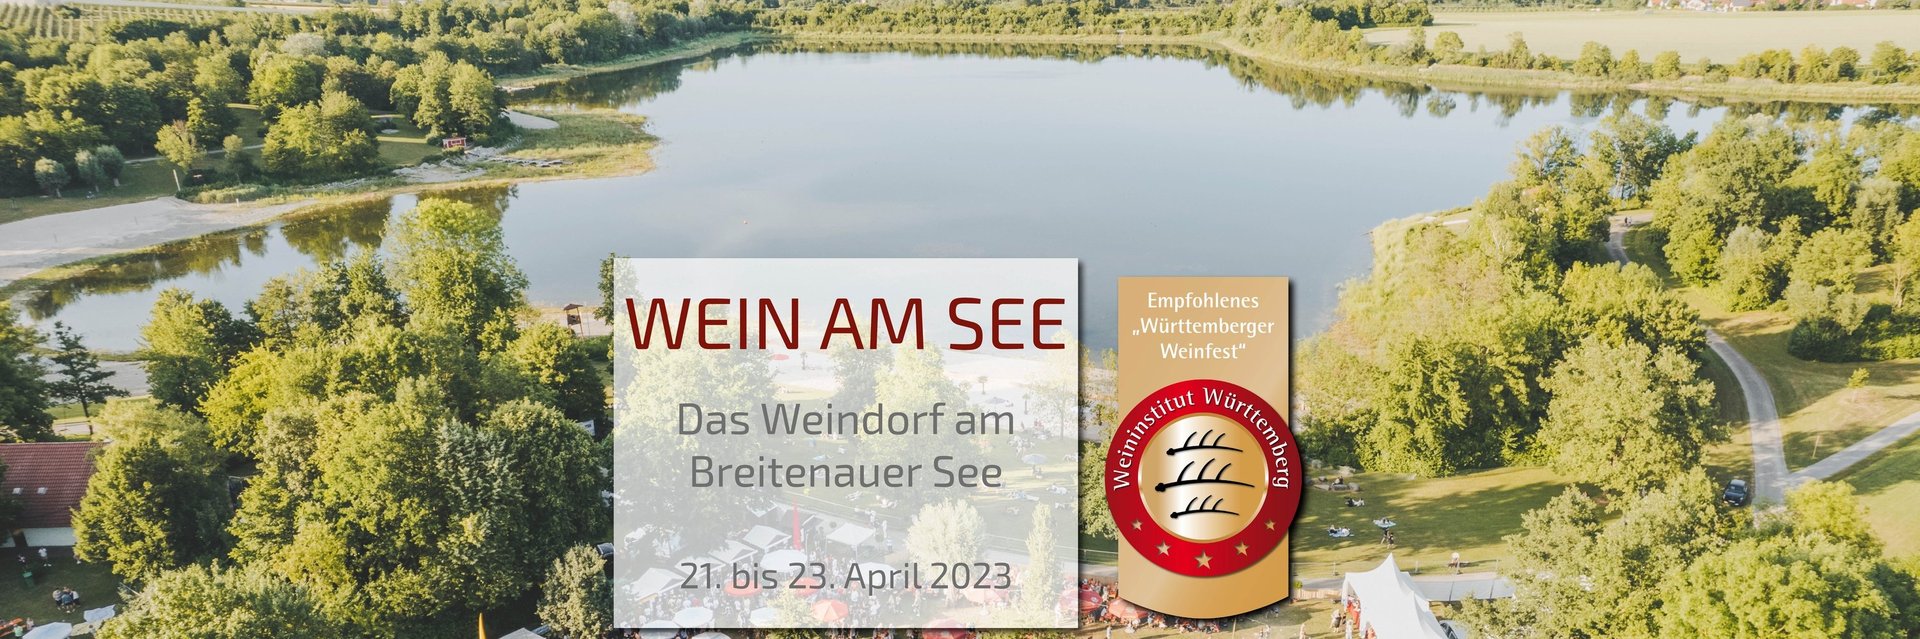 Wein am See 2023 - Weinfest am Breitenauer See